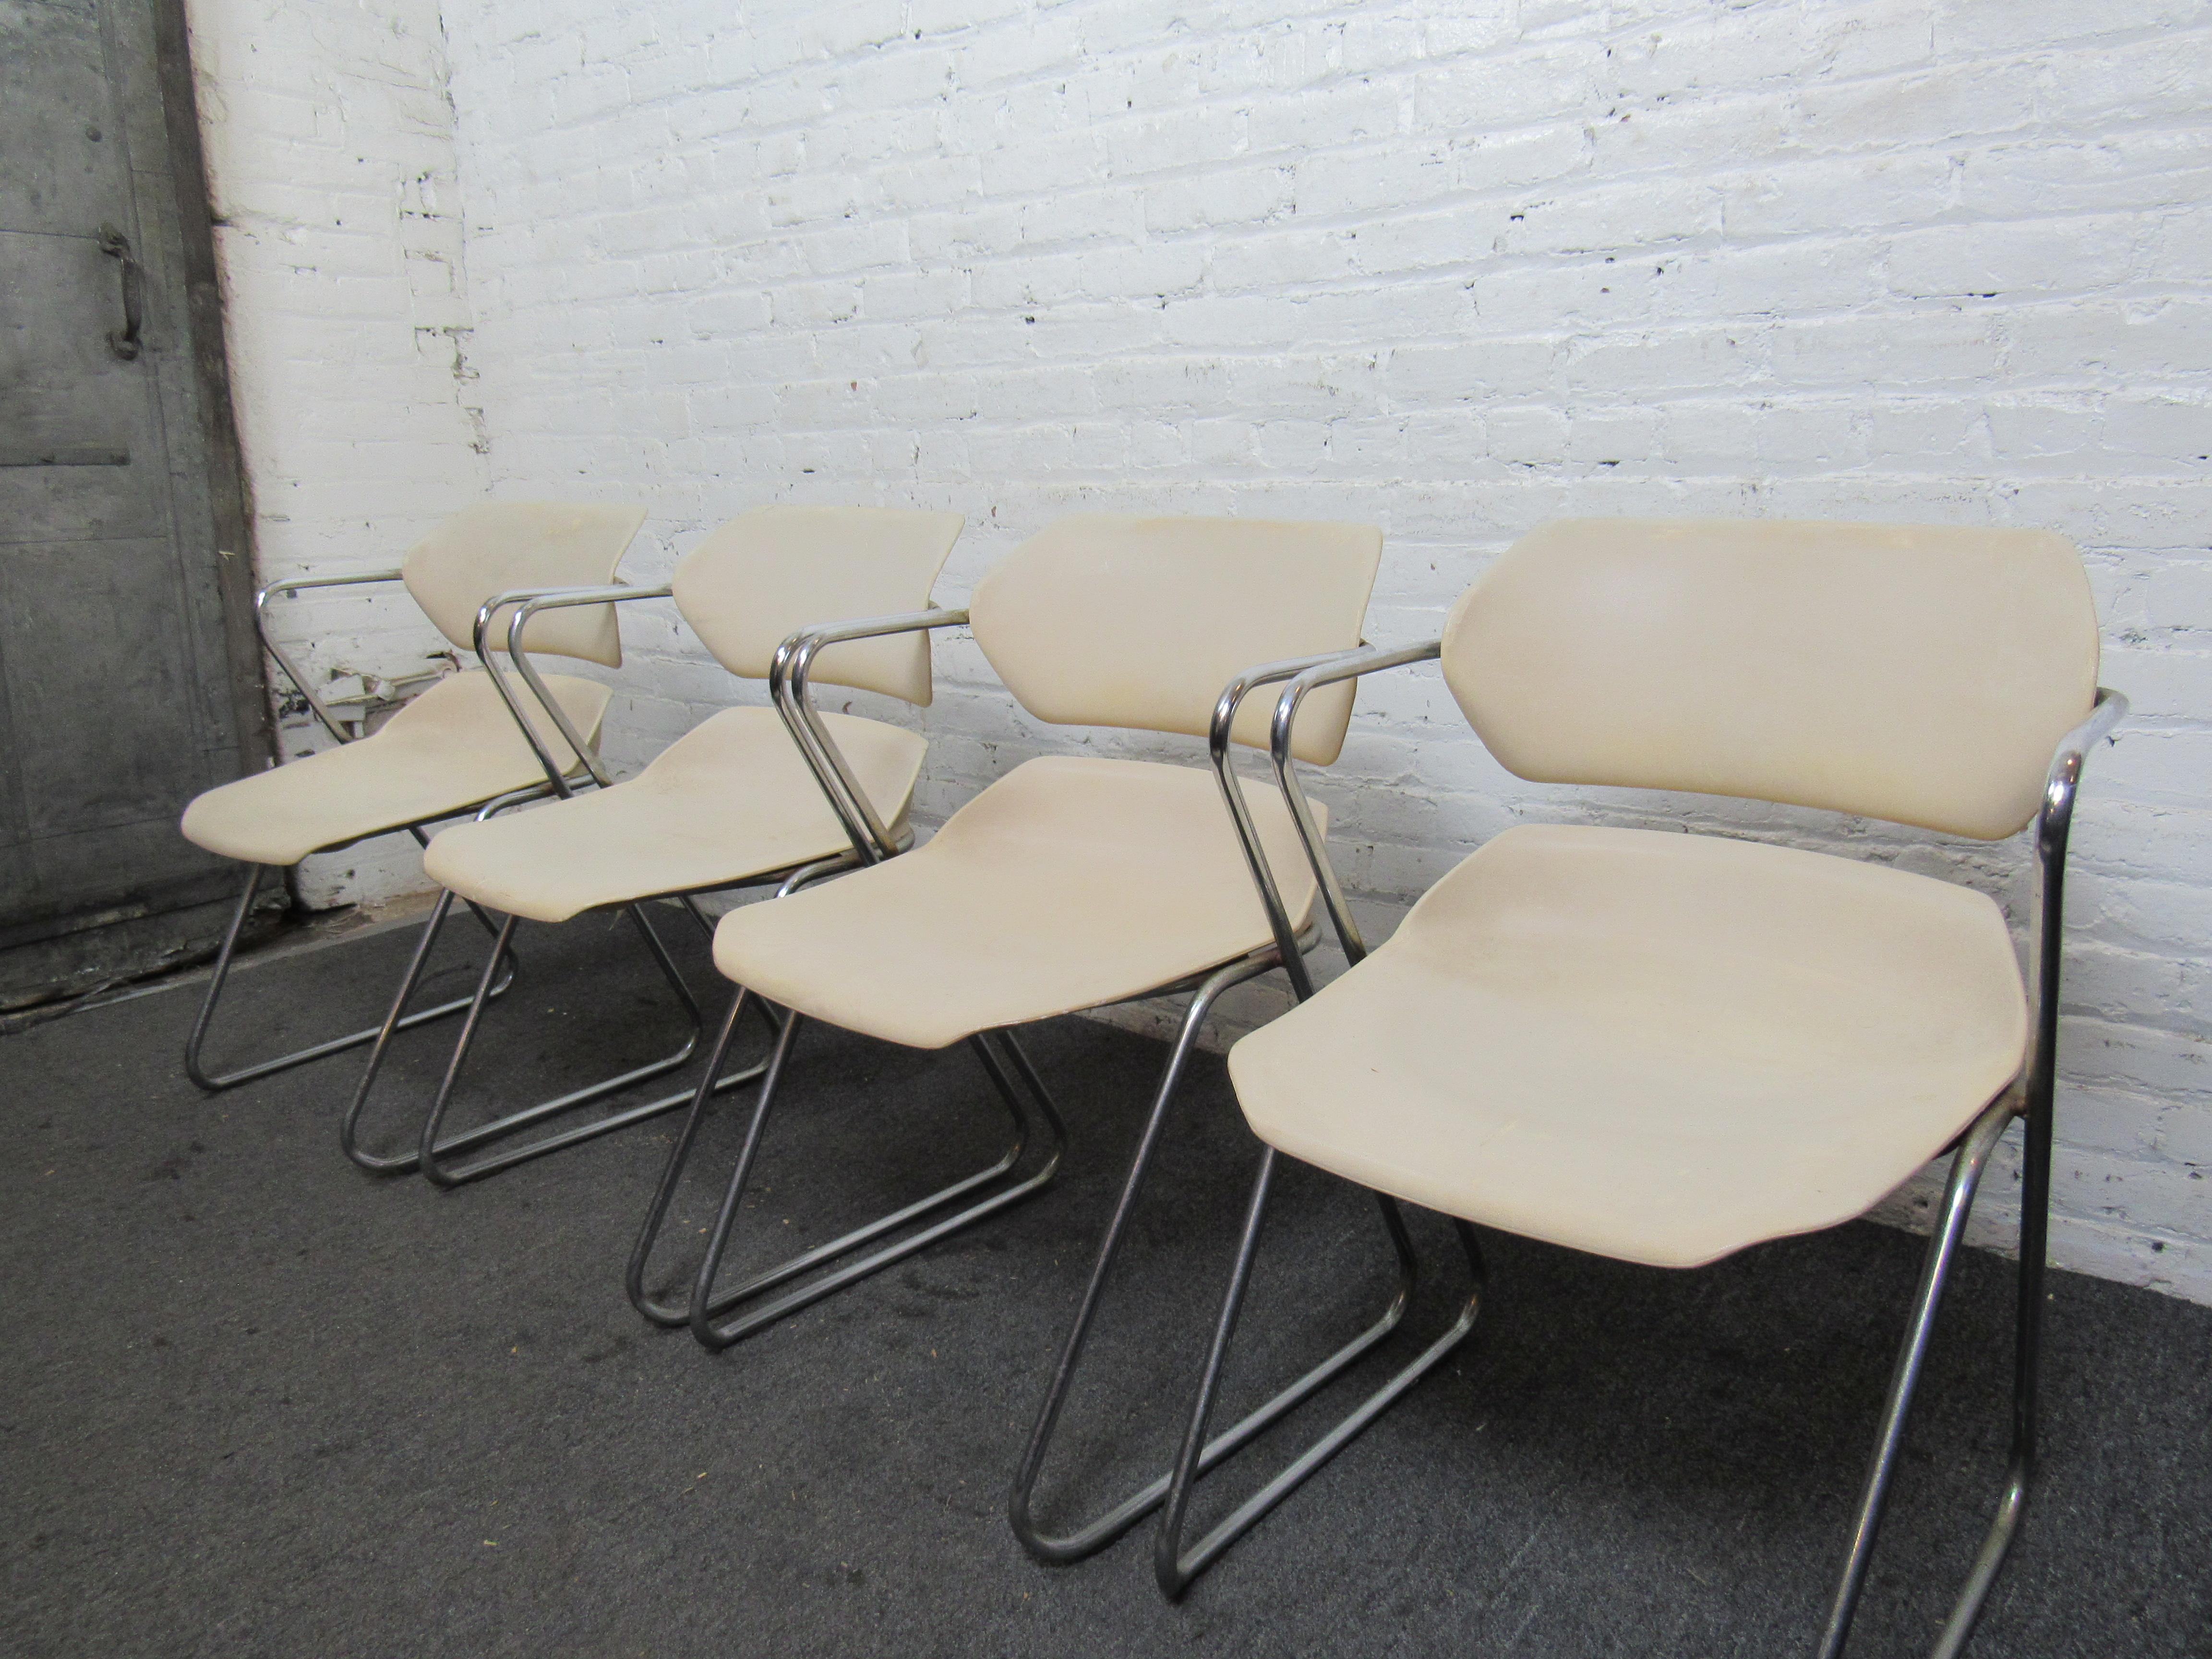 Ensemble unique de quatre chaises Acton Stacker d'American Seating. Ensemble de chaises confortables et pratiques pour la salle à manger, le bureau ou un usage occasionnel. 
Les chaises ont été conçues pour avoir un léger balancement. Facilement